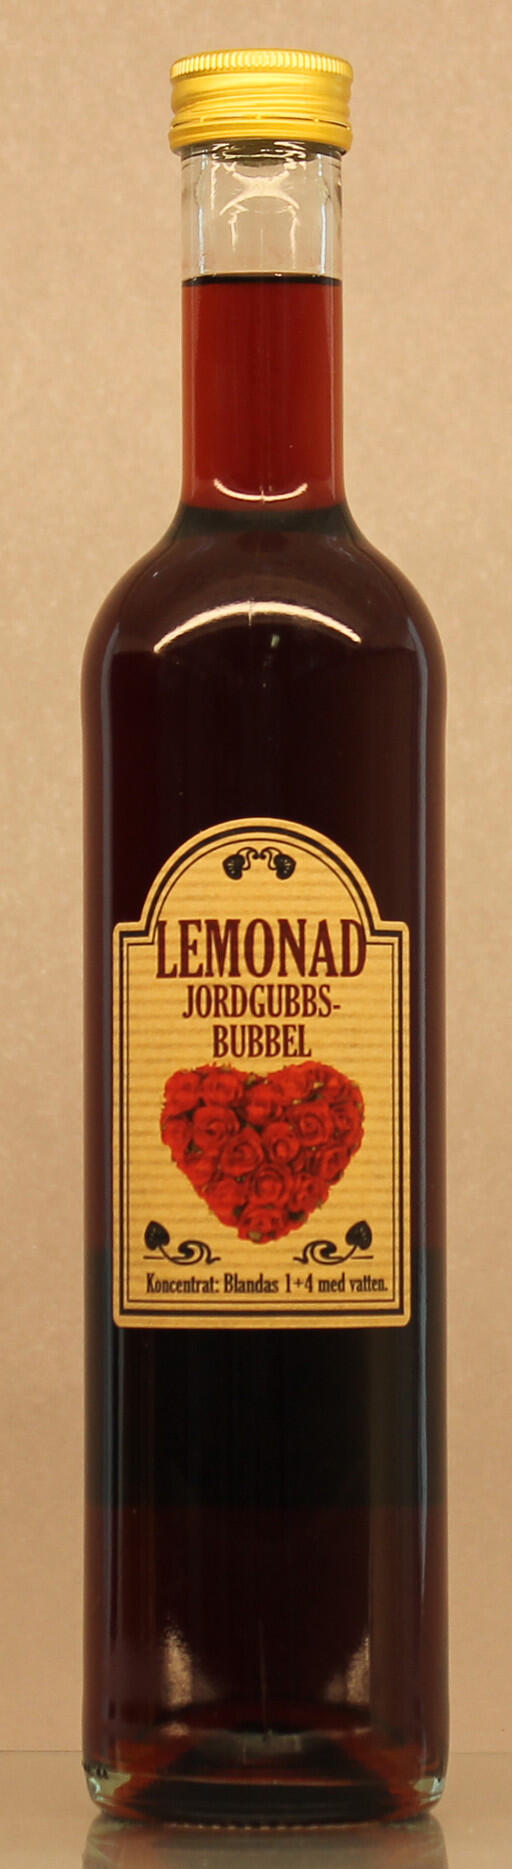 Lemonad Jordgubbsbubbel 50 cl